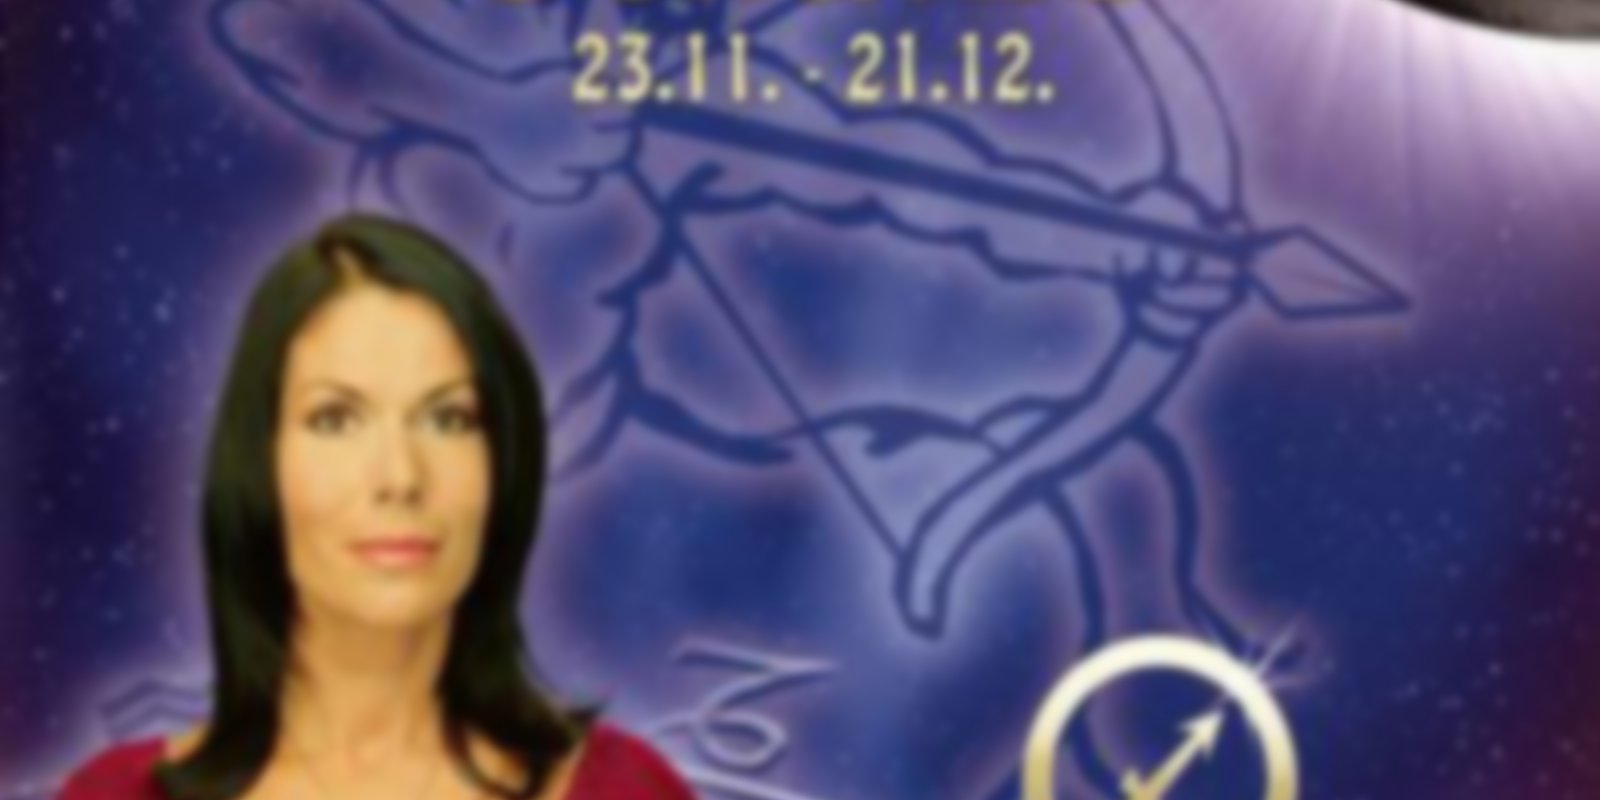 Das Horoskop 2005 - Schütze